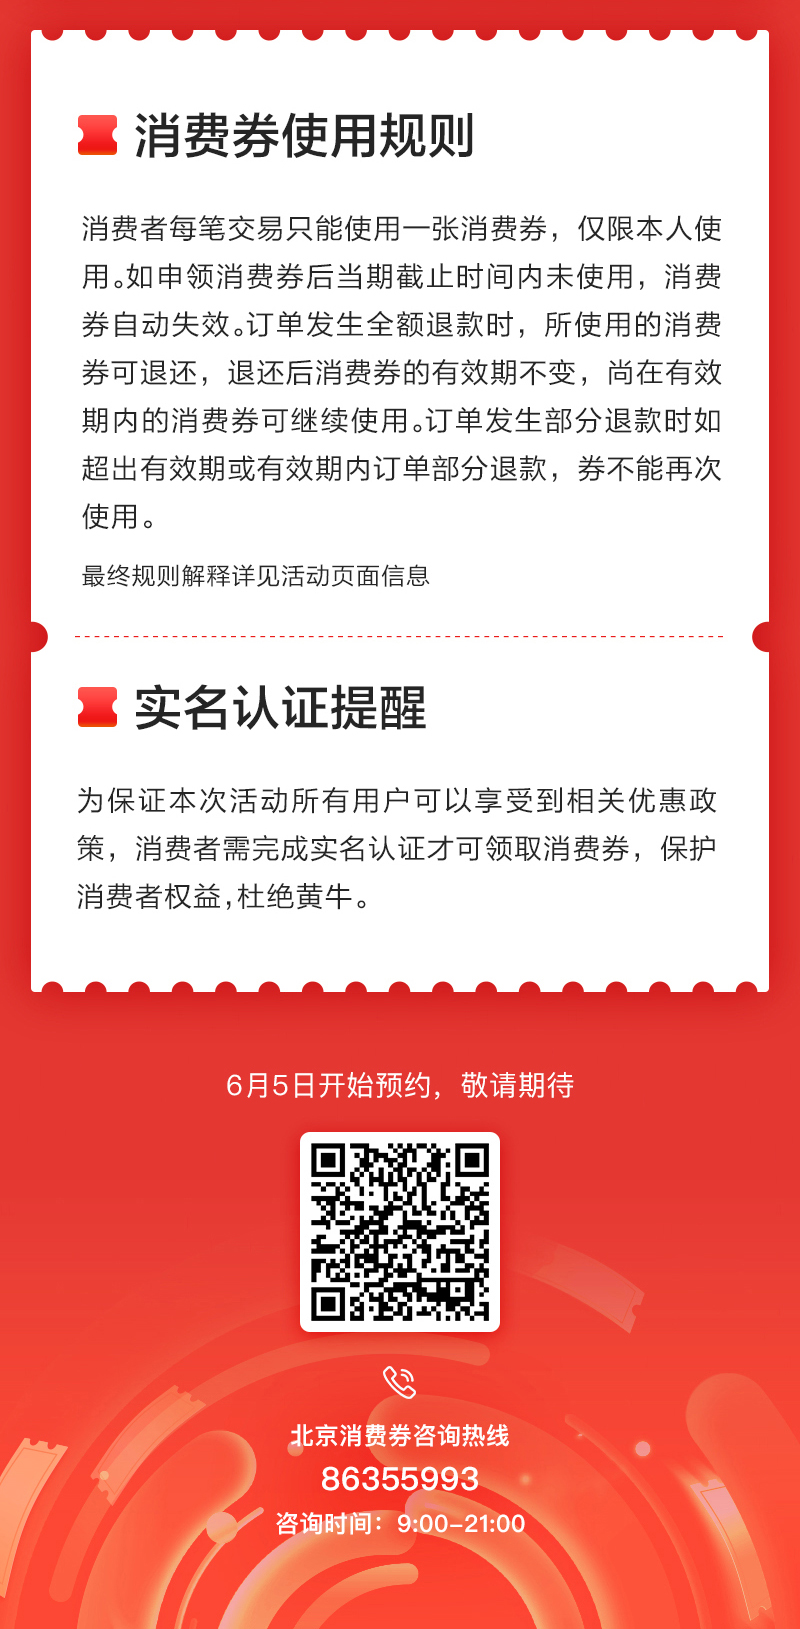 促消费助经济北京消费季6月6日启动122亿元消费券将发放